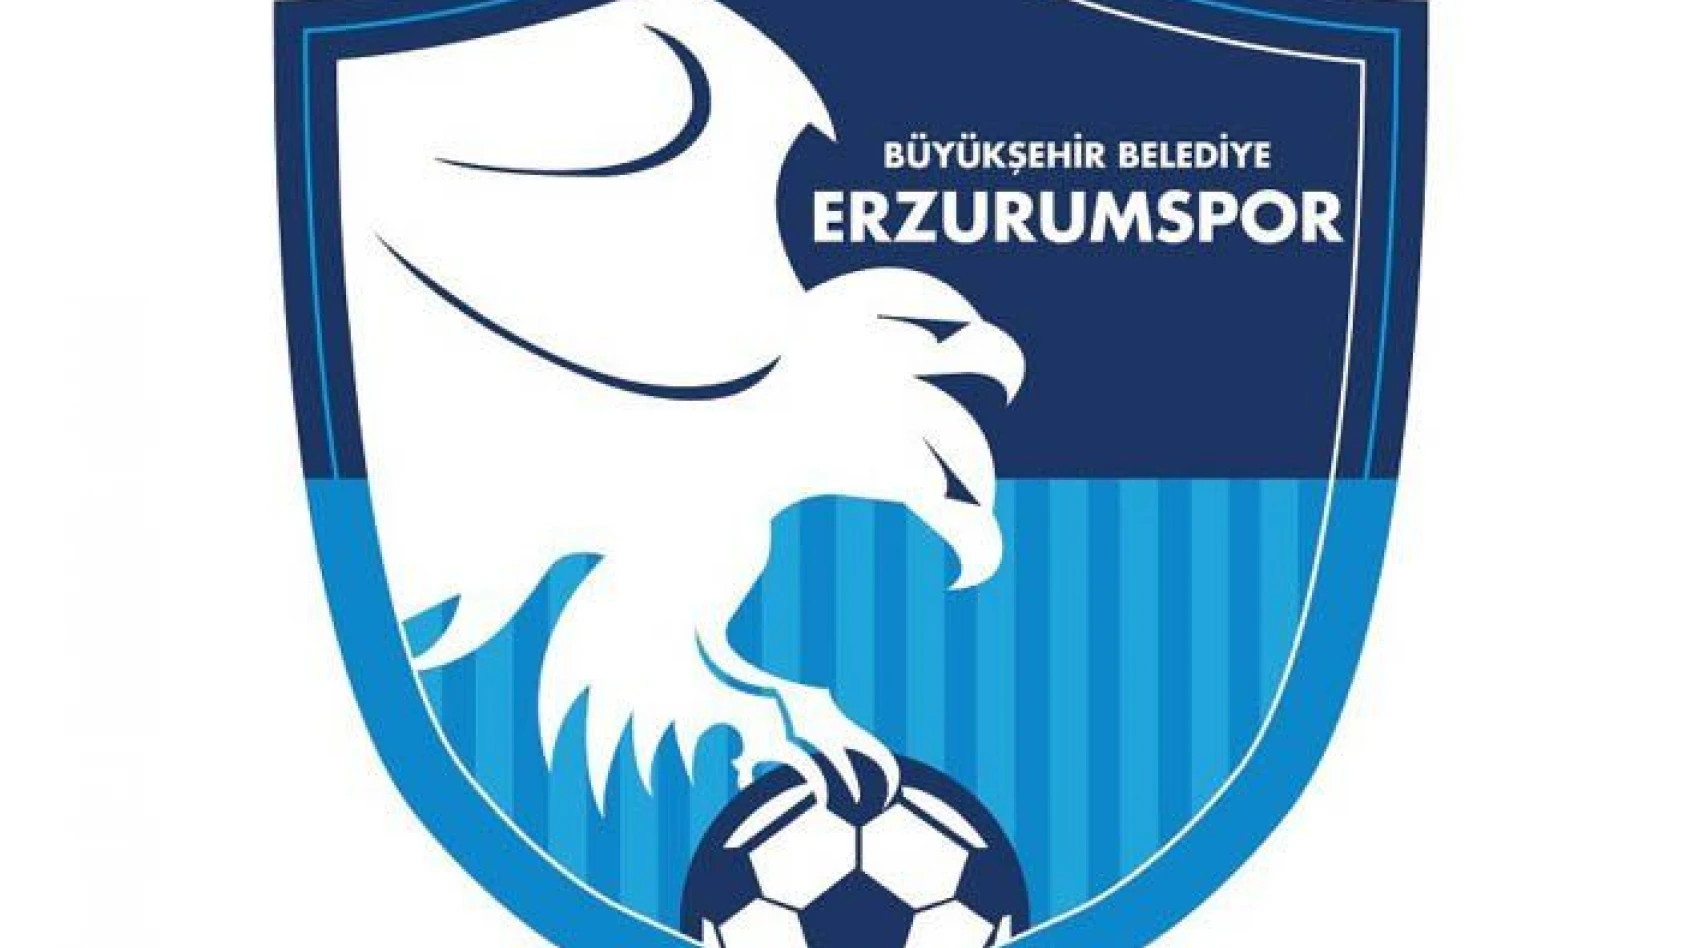 BB Erzurumspor'da 4'ü futbolcu 11 kişinin Kovid-19 testi pozitif çıktı